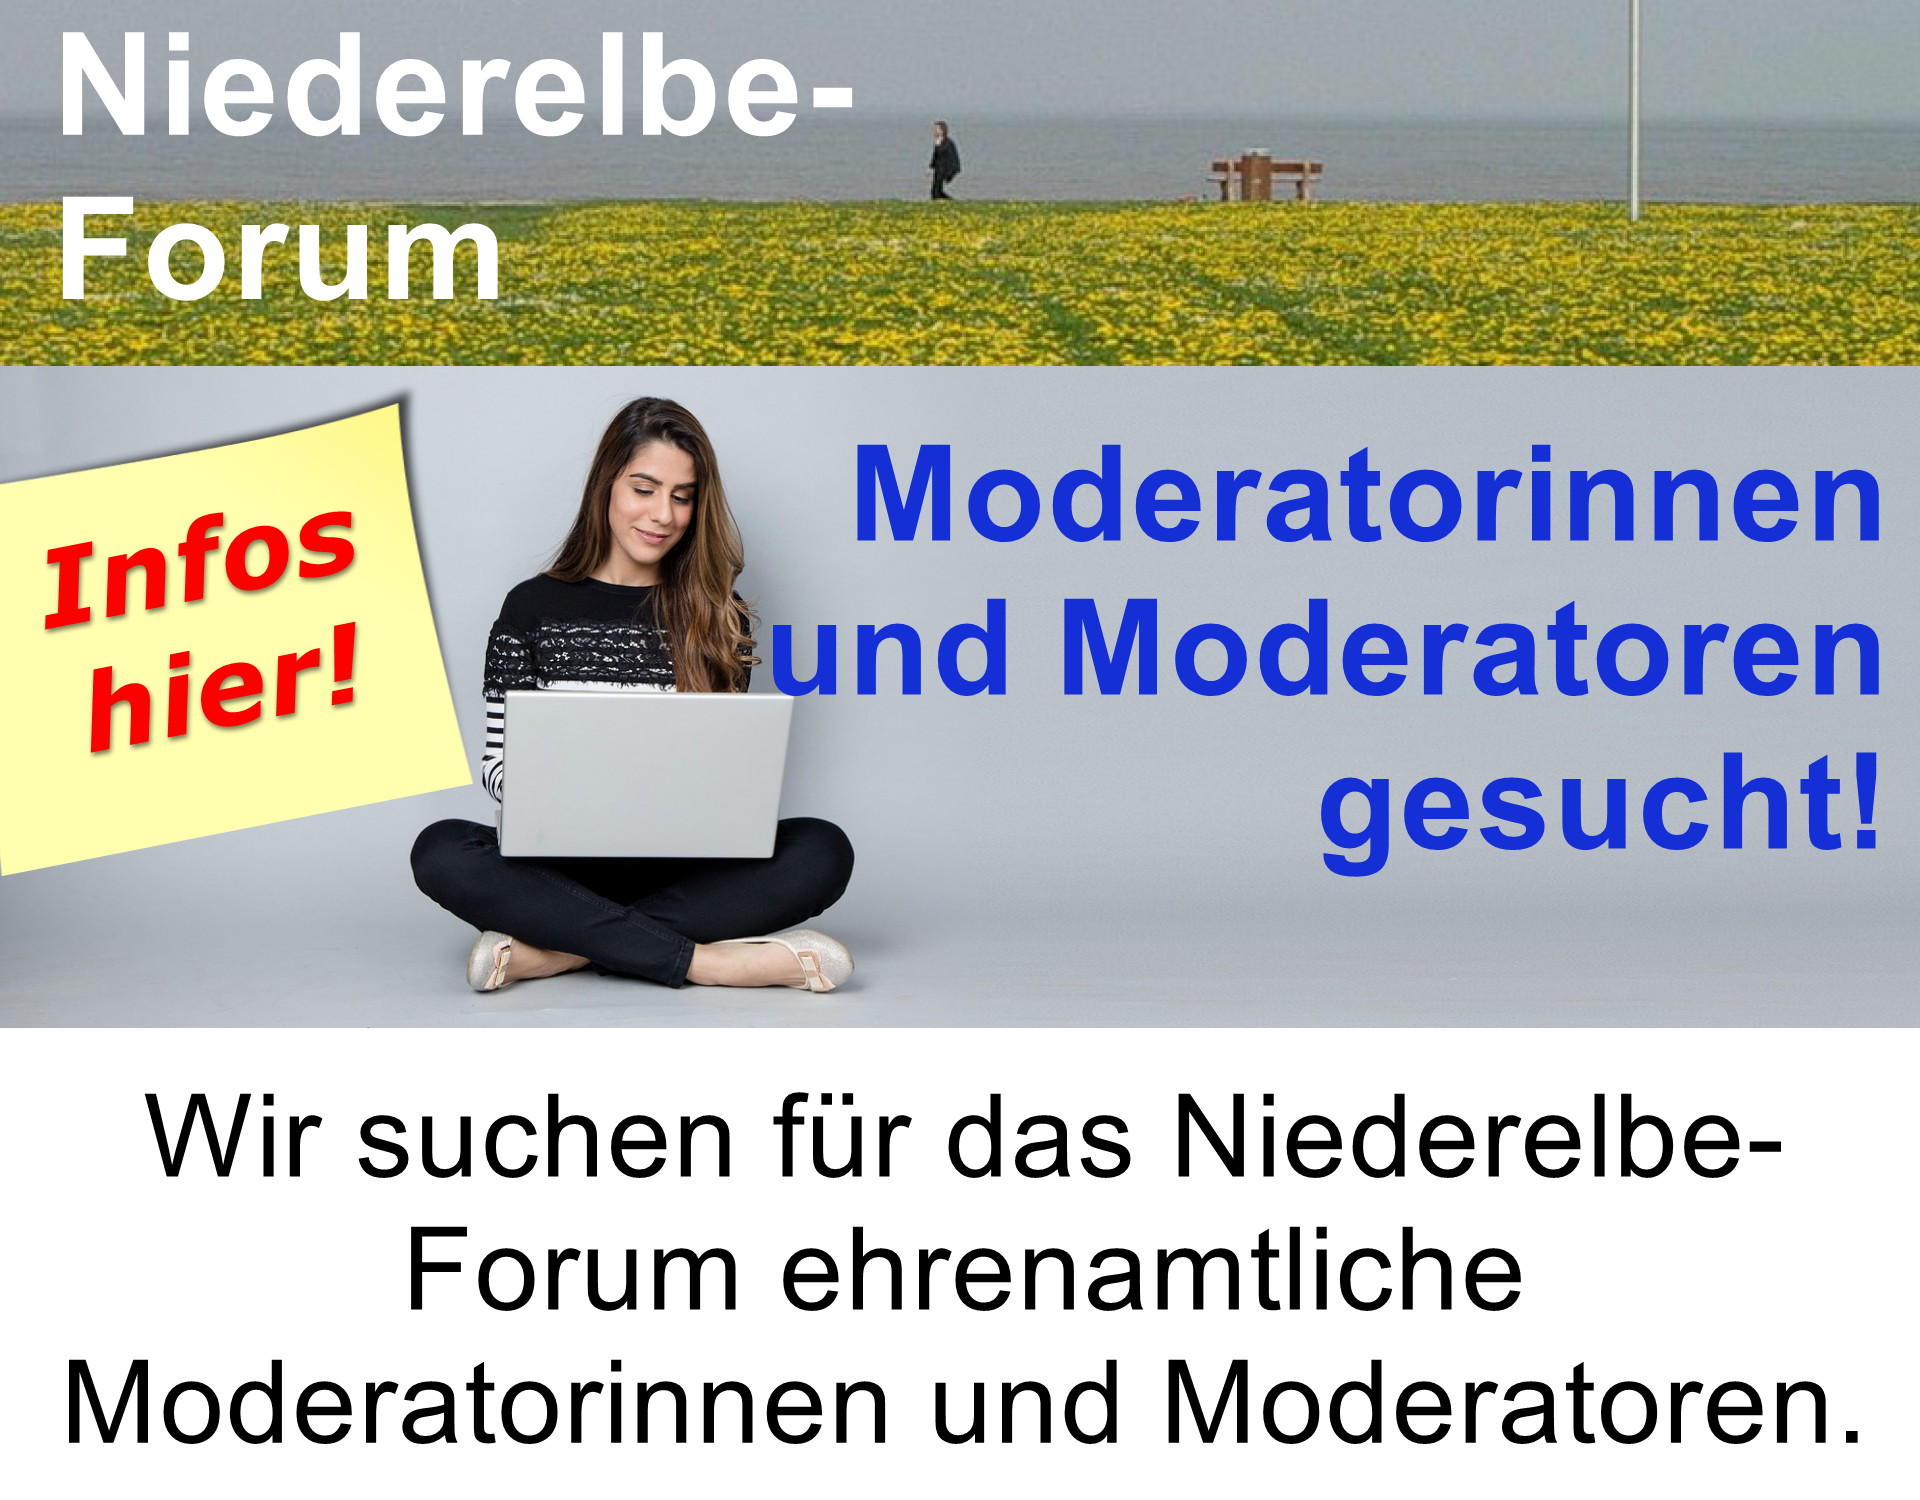 moderatoren-innen-gesucht-niederelbe-forum.jpg